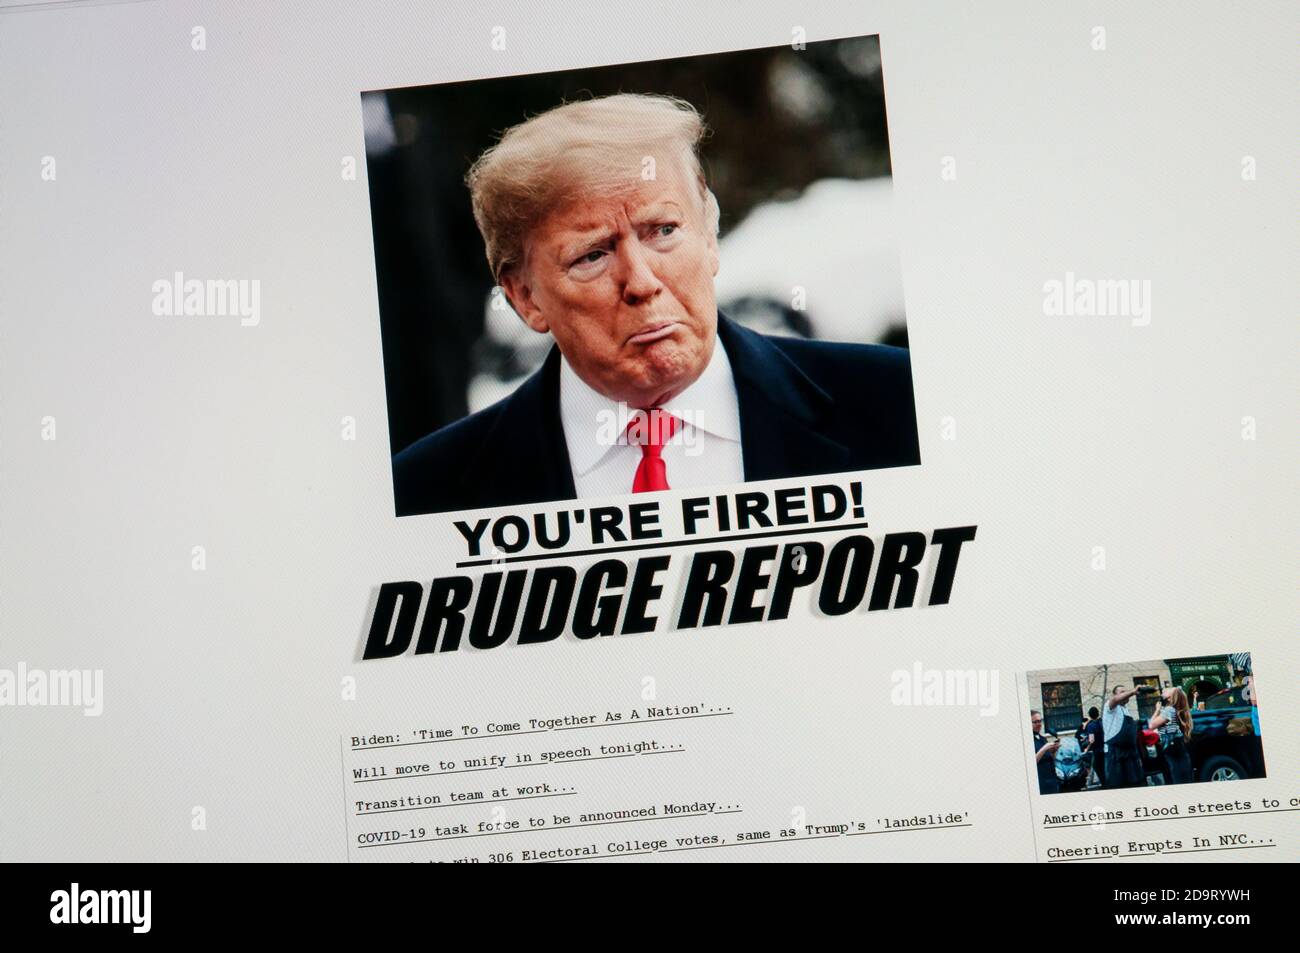 November 2020, 07. Startseite der Drudge Report-Website als Donald Trump die US-Präsidentschaftswahl 2020 verliert. Credit sjscreens/Alamy. Stockfoto